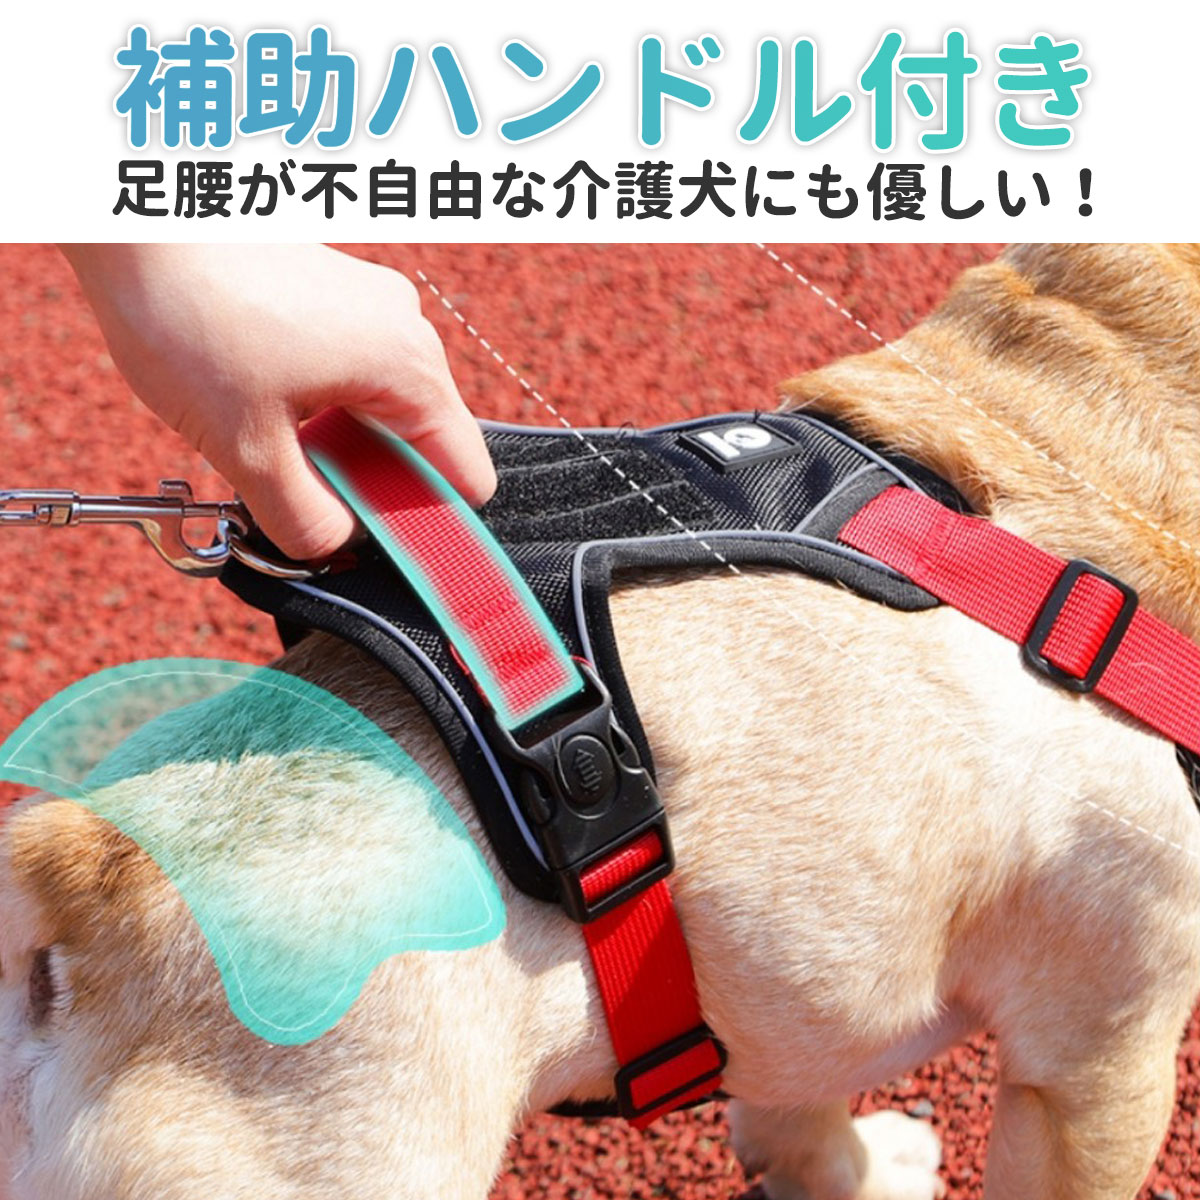  dog Harness stylish .. not easy installation small size dog medium sized dog large dog dog for harness necklace 